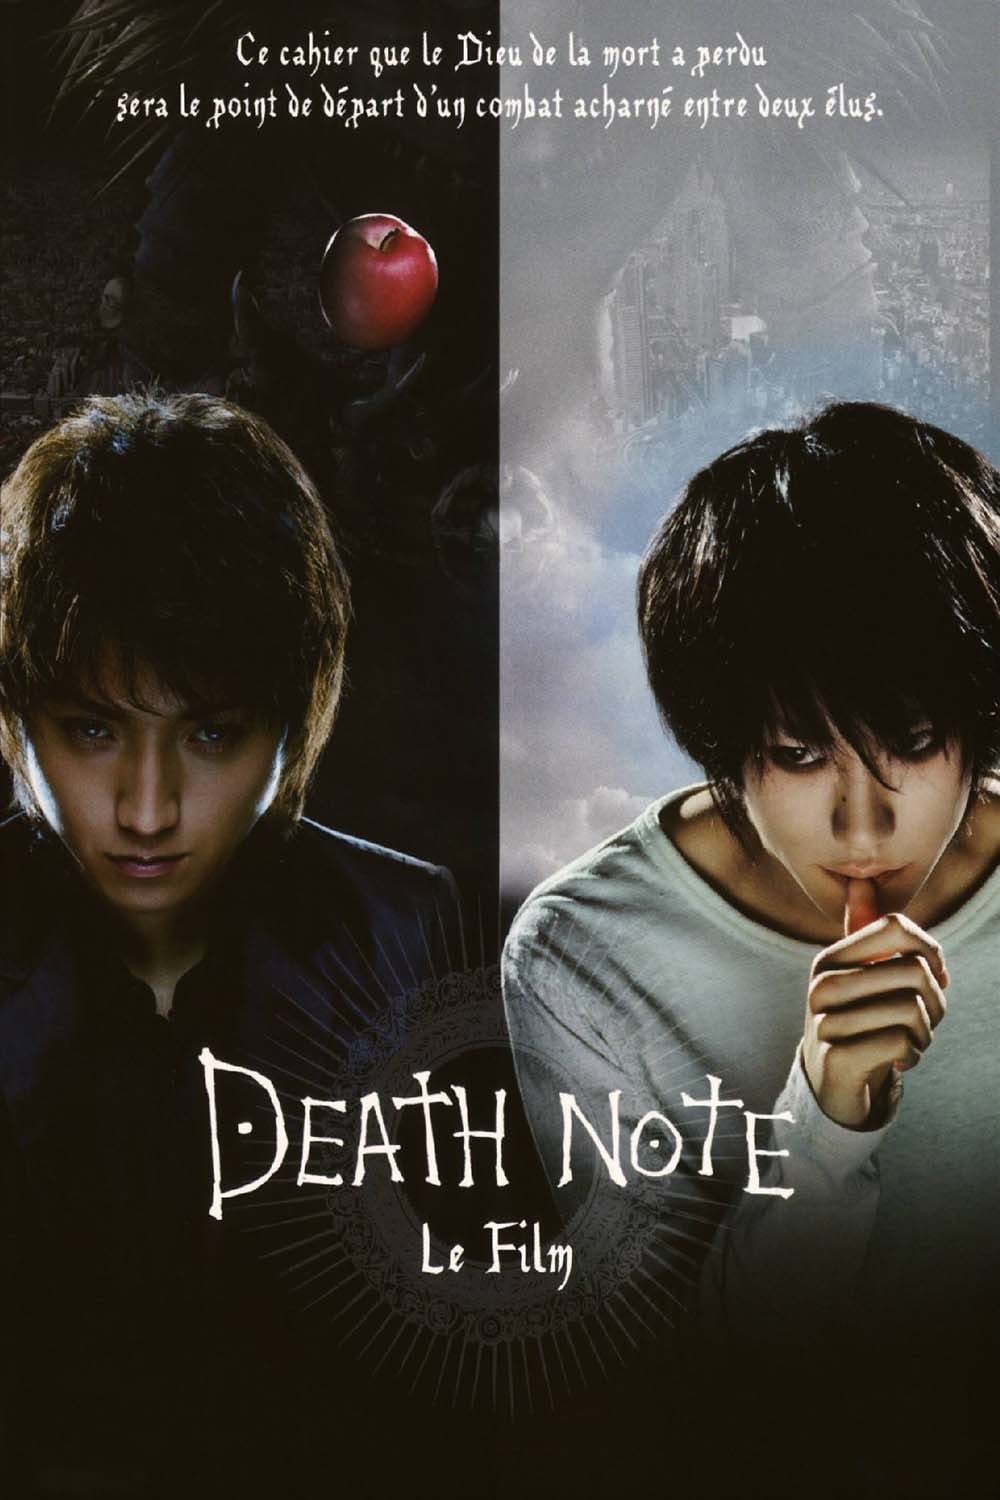 Death Note Le film - MULTI HDLight 1080p